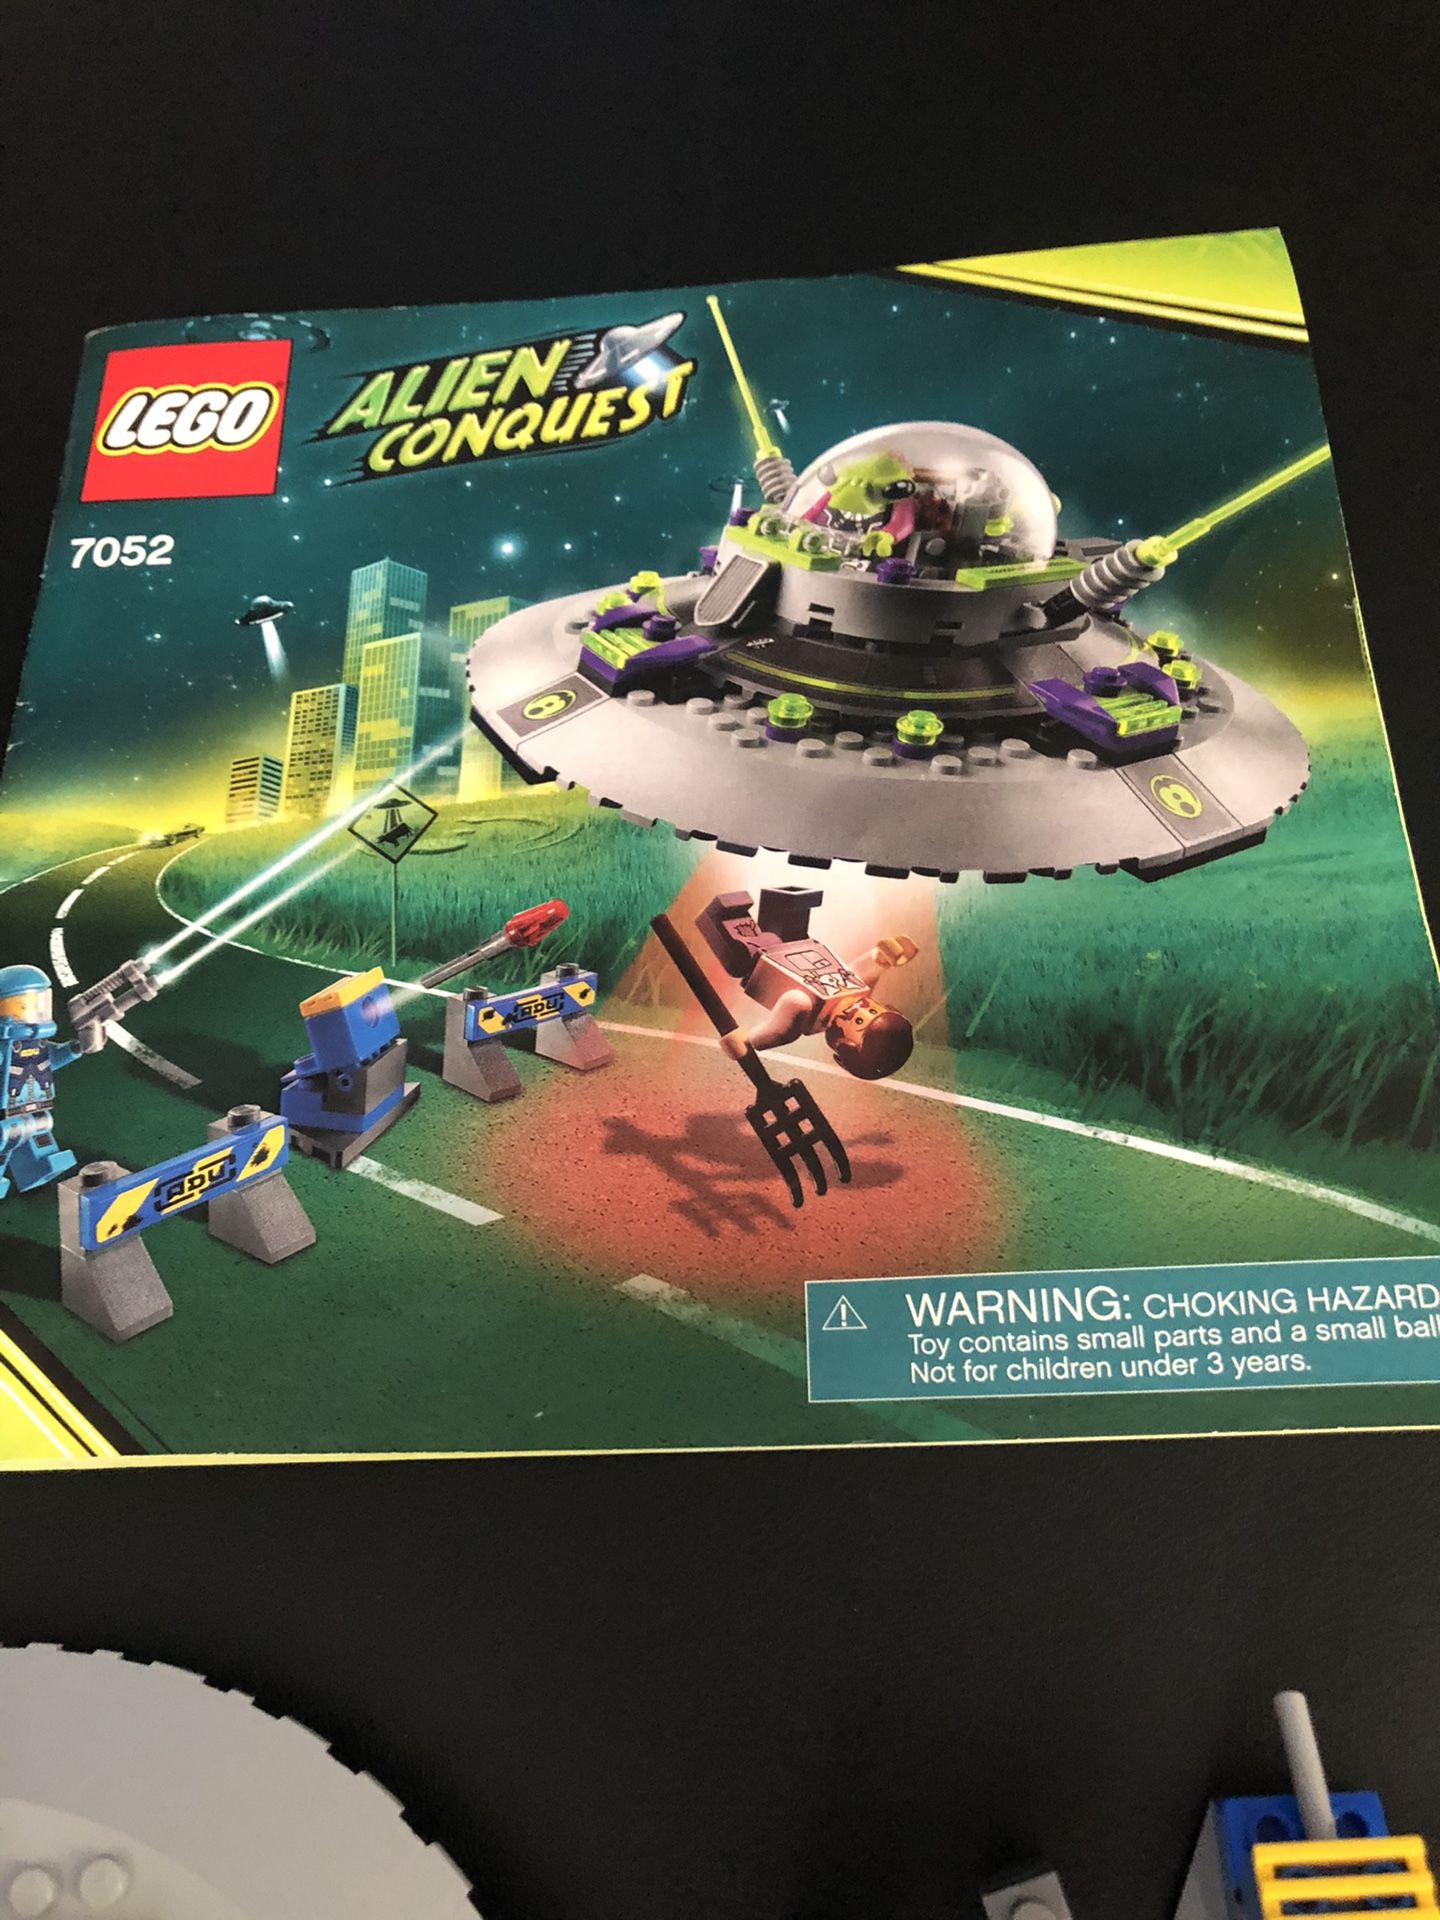 Lego 7052